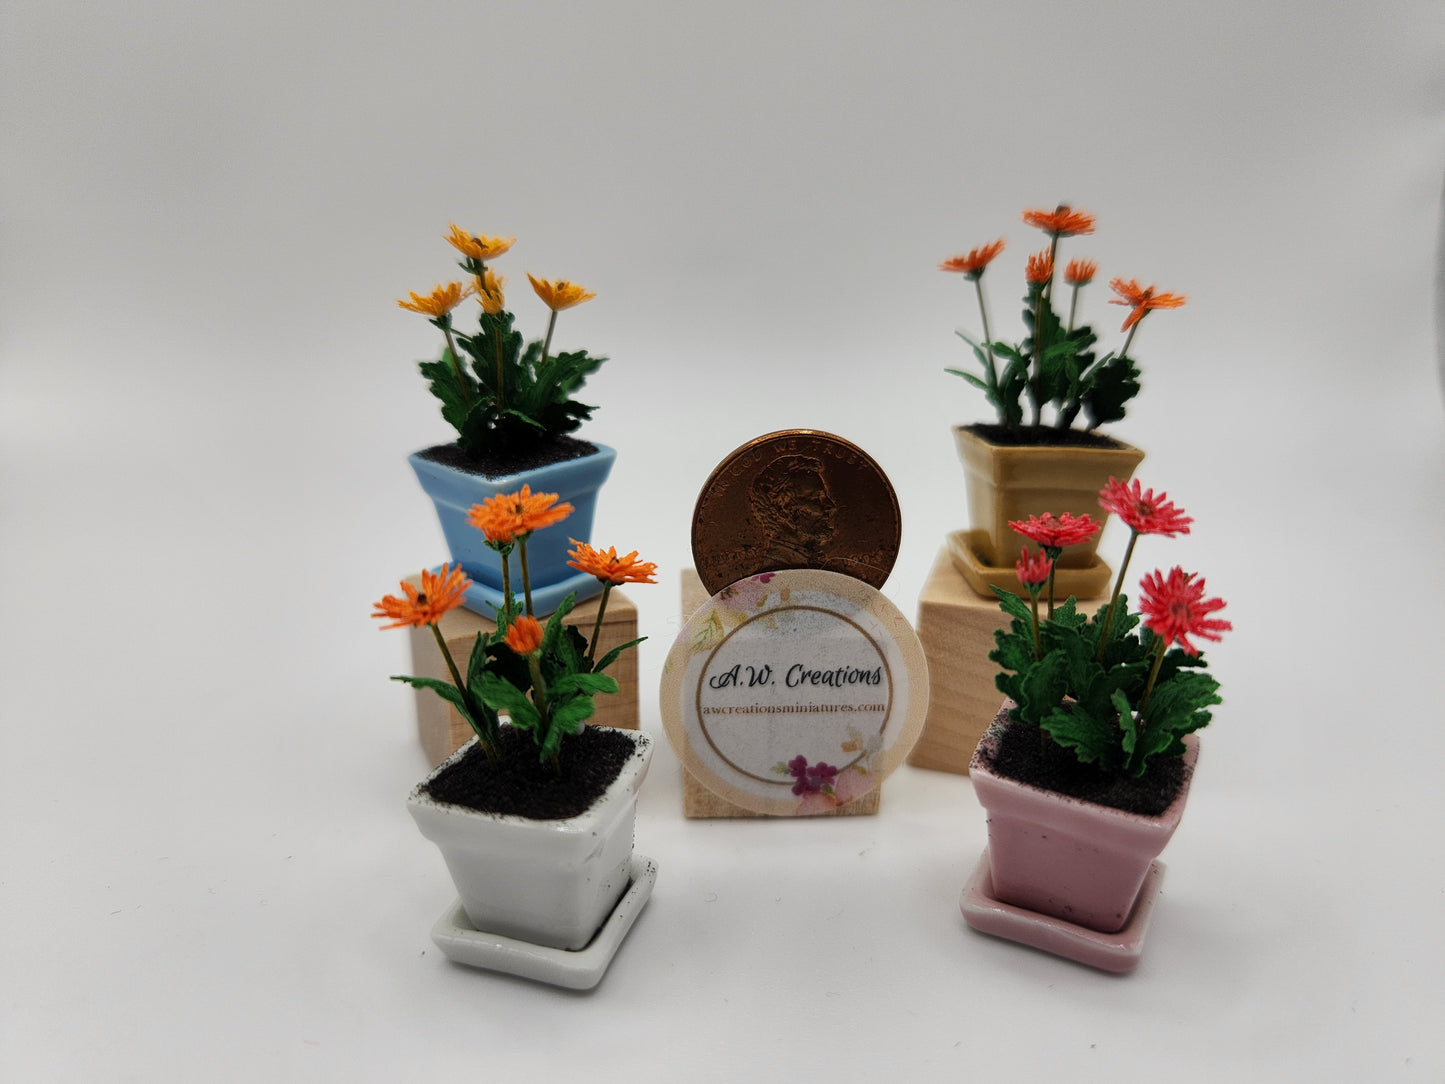 Gerbera Daisy in Ceramic Pot